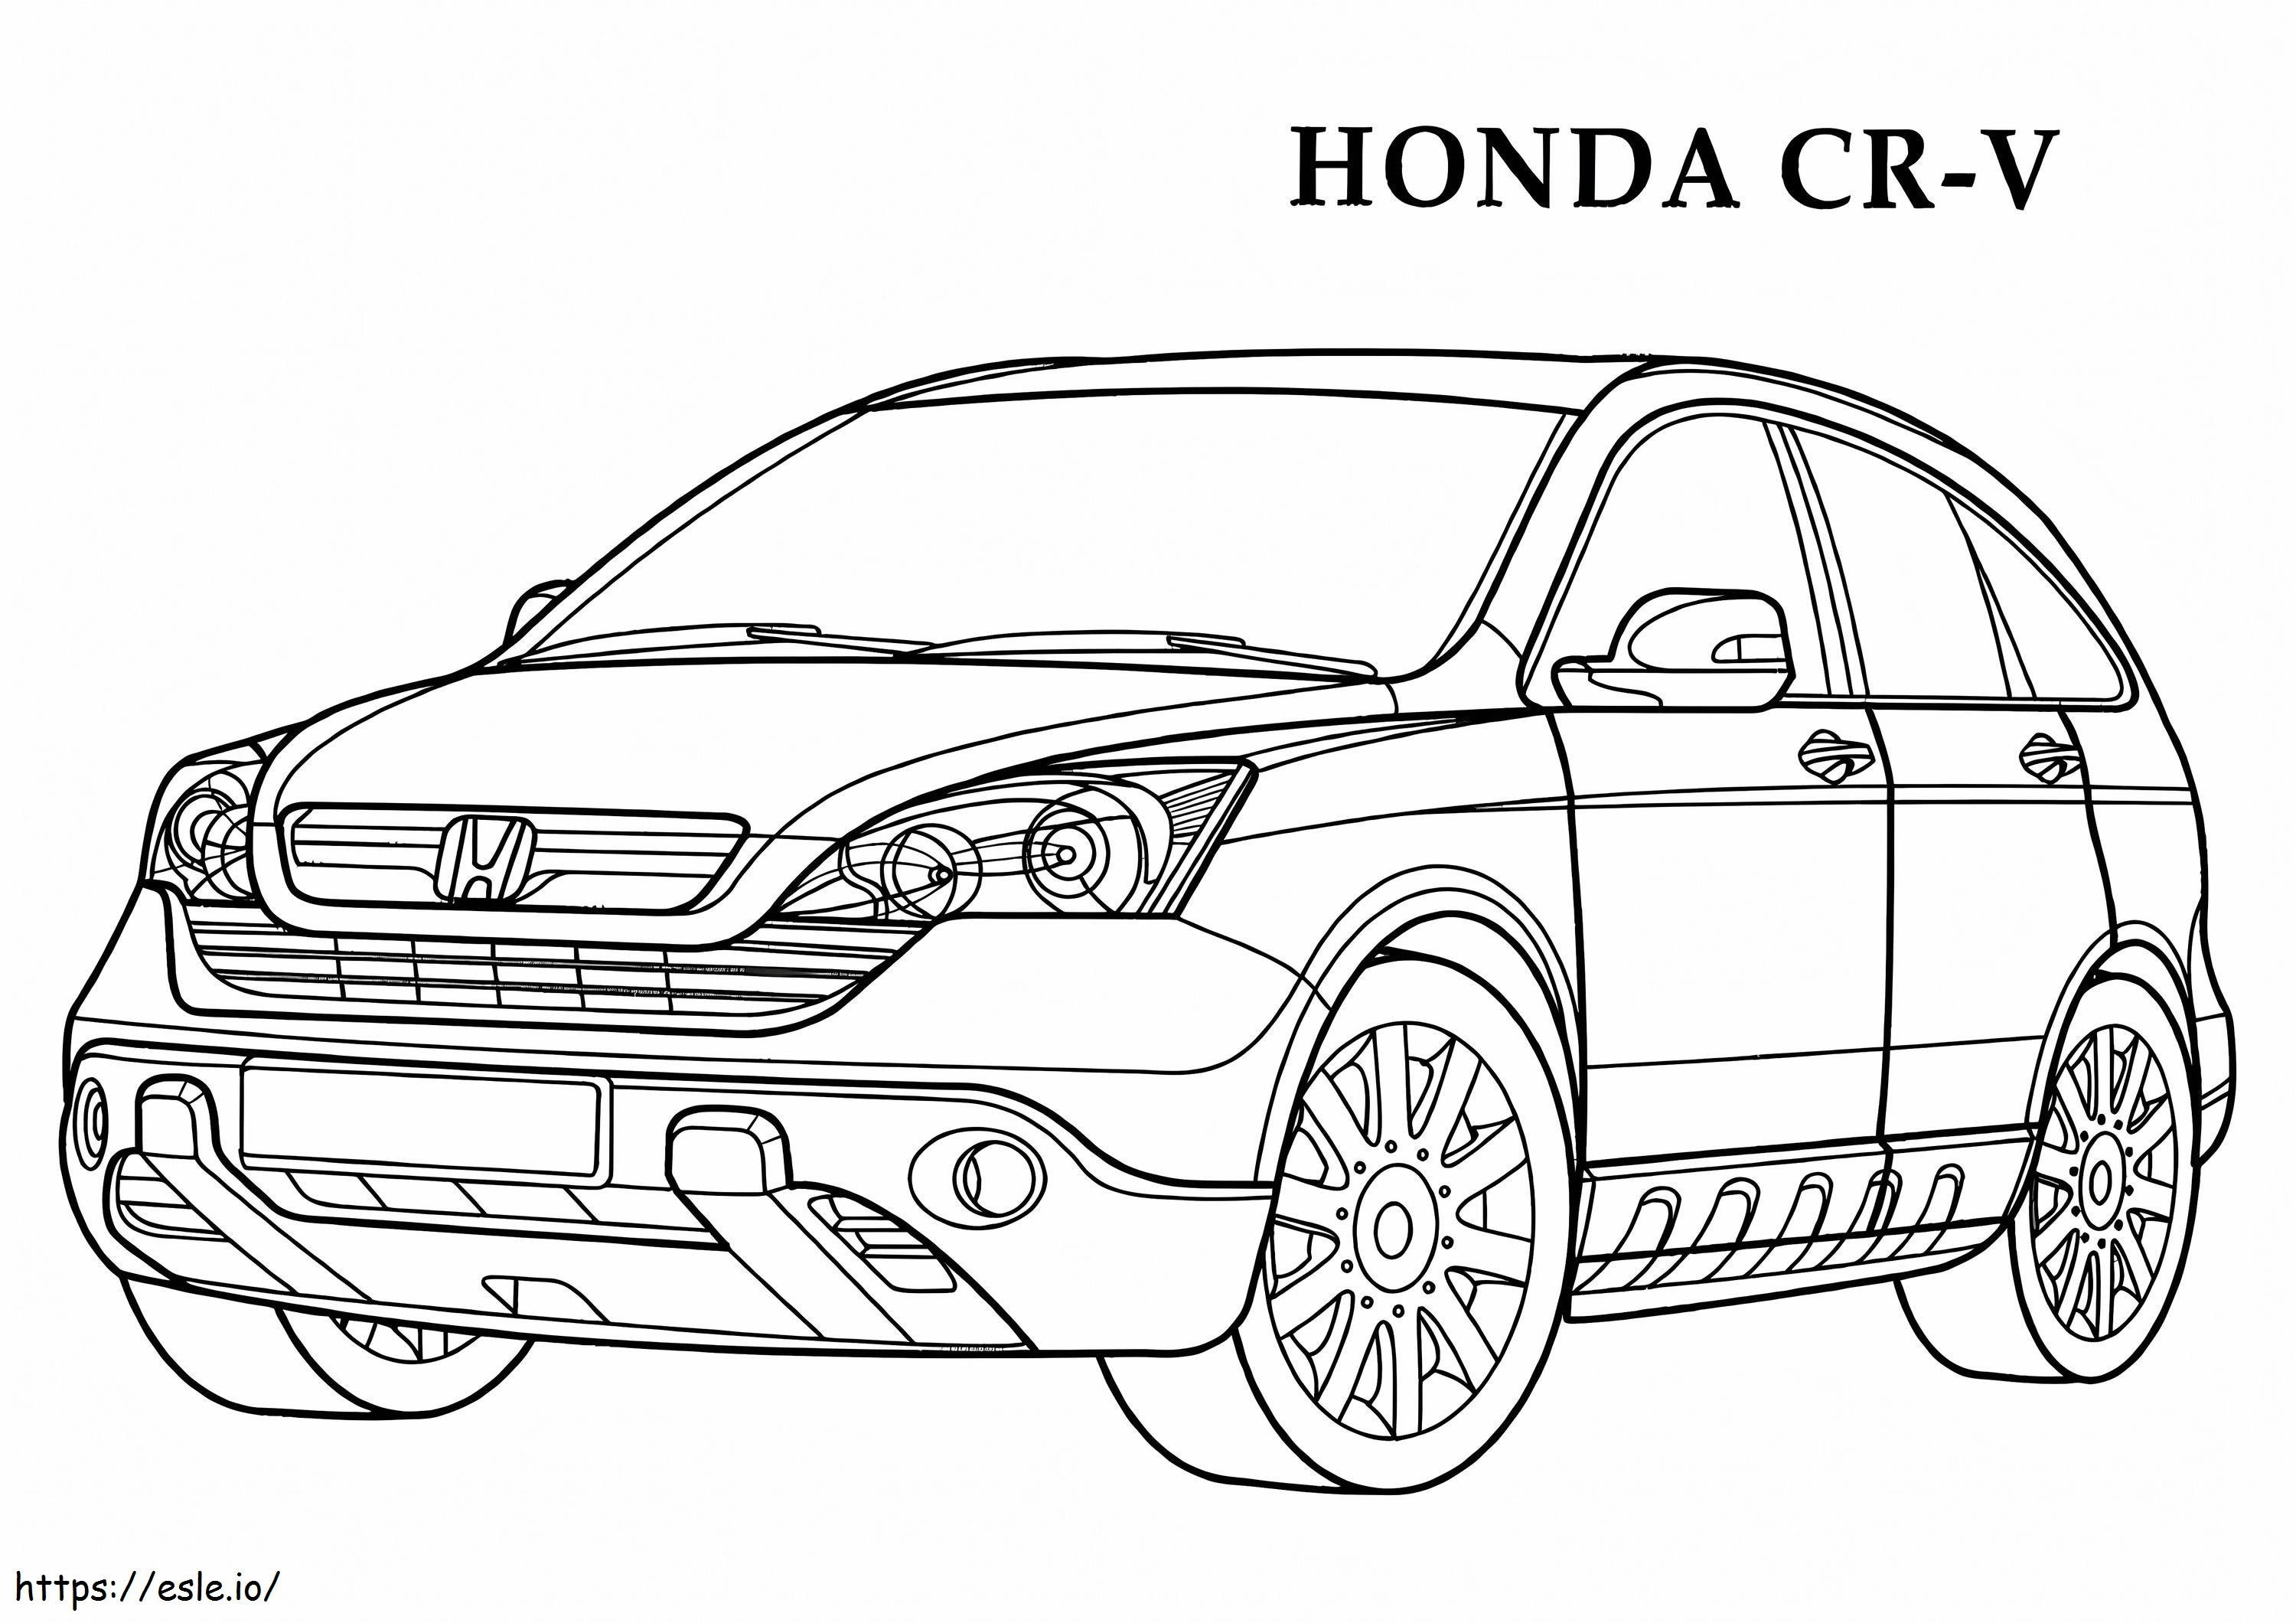 Honda CRV2 coloring page